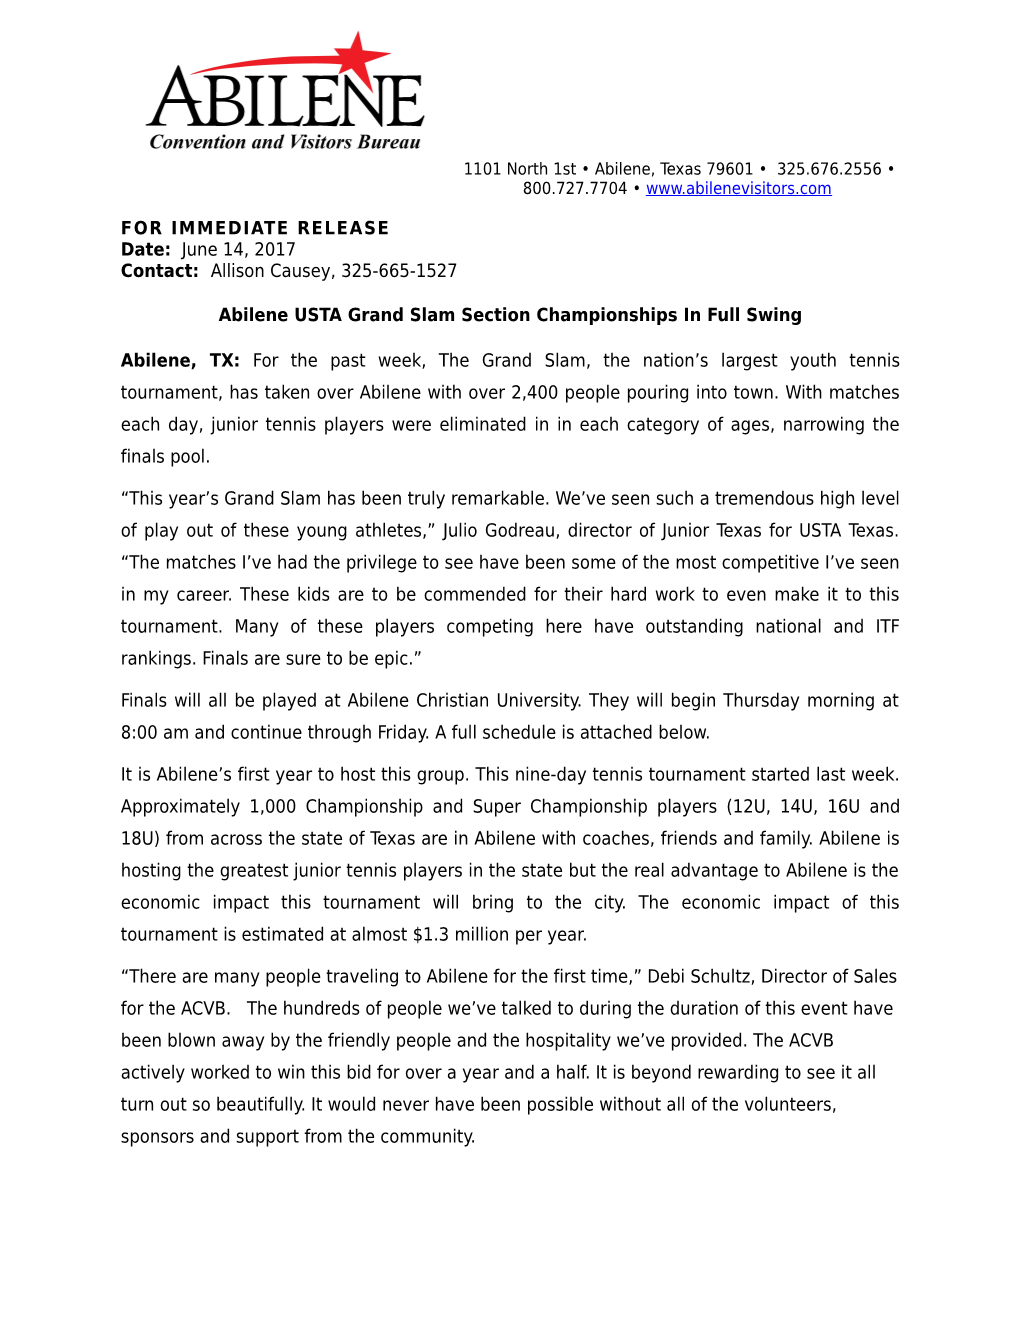 Abilene USTA Grand Slam Section Championships in Full Swing